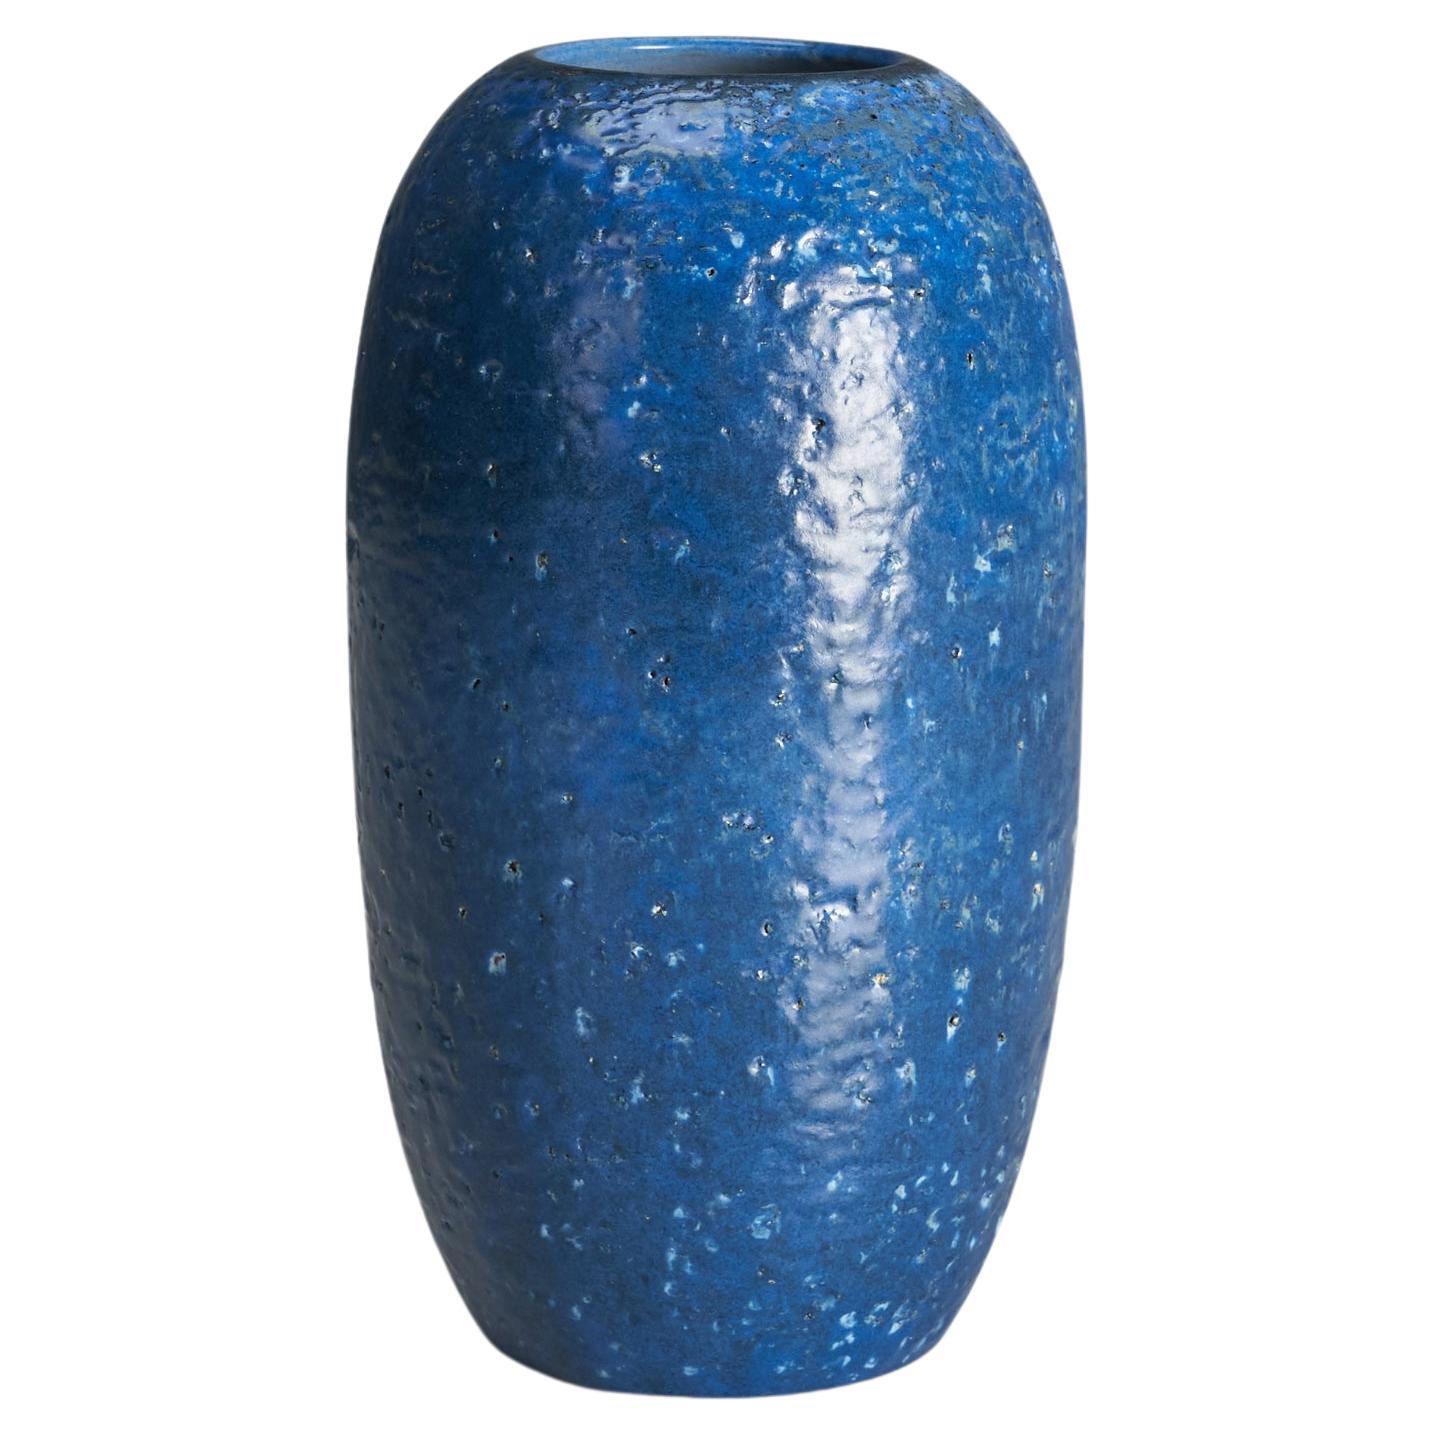 Upsala Ekeby, Vase, Blue-Glazed Earthenware, 1950s